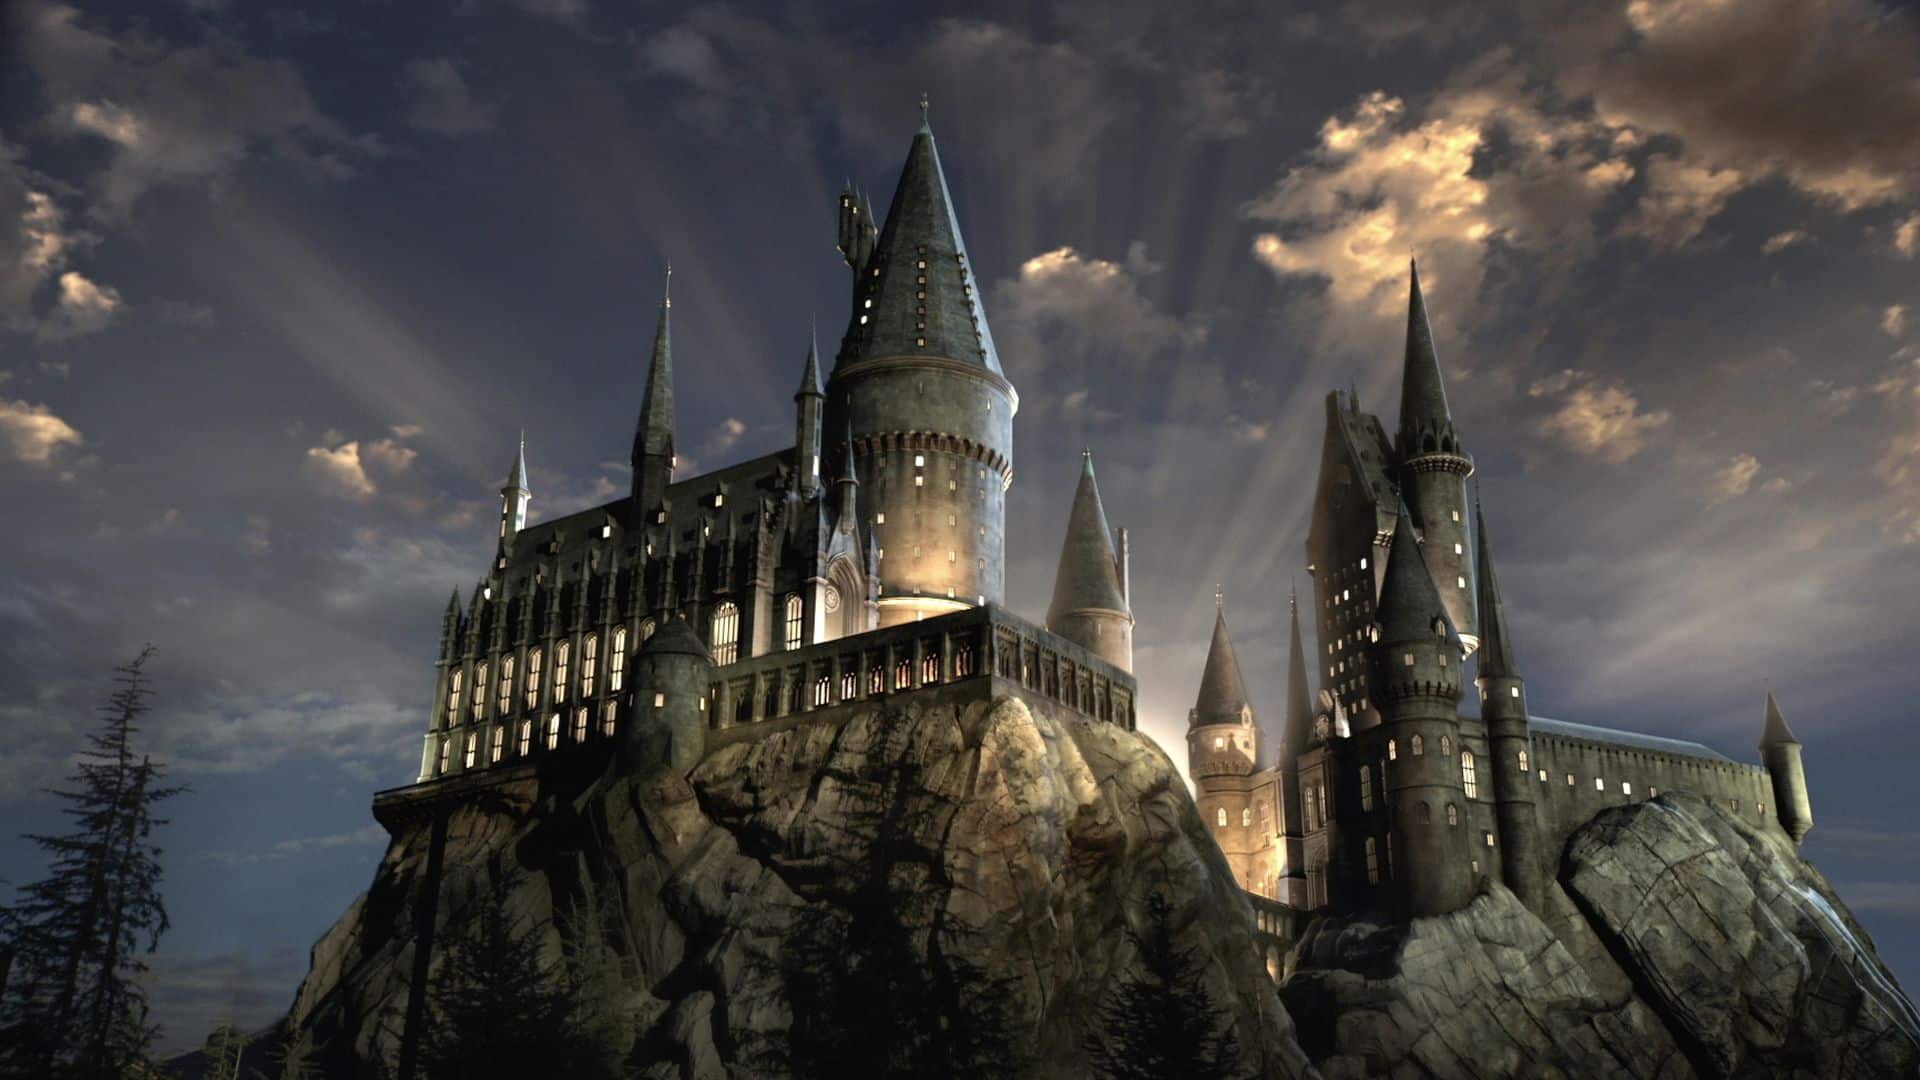 Harry Potter: Back to Hogwarts diventa digitale. Ecco come veder partire il treno da Kings Cross!